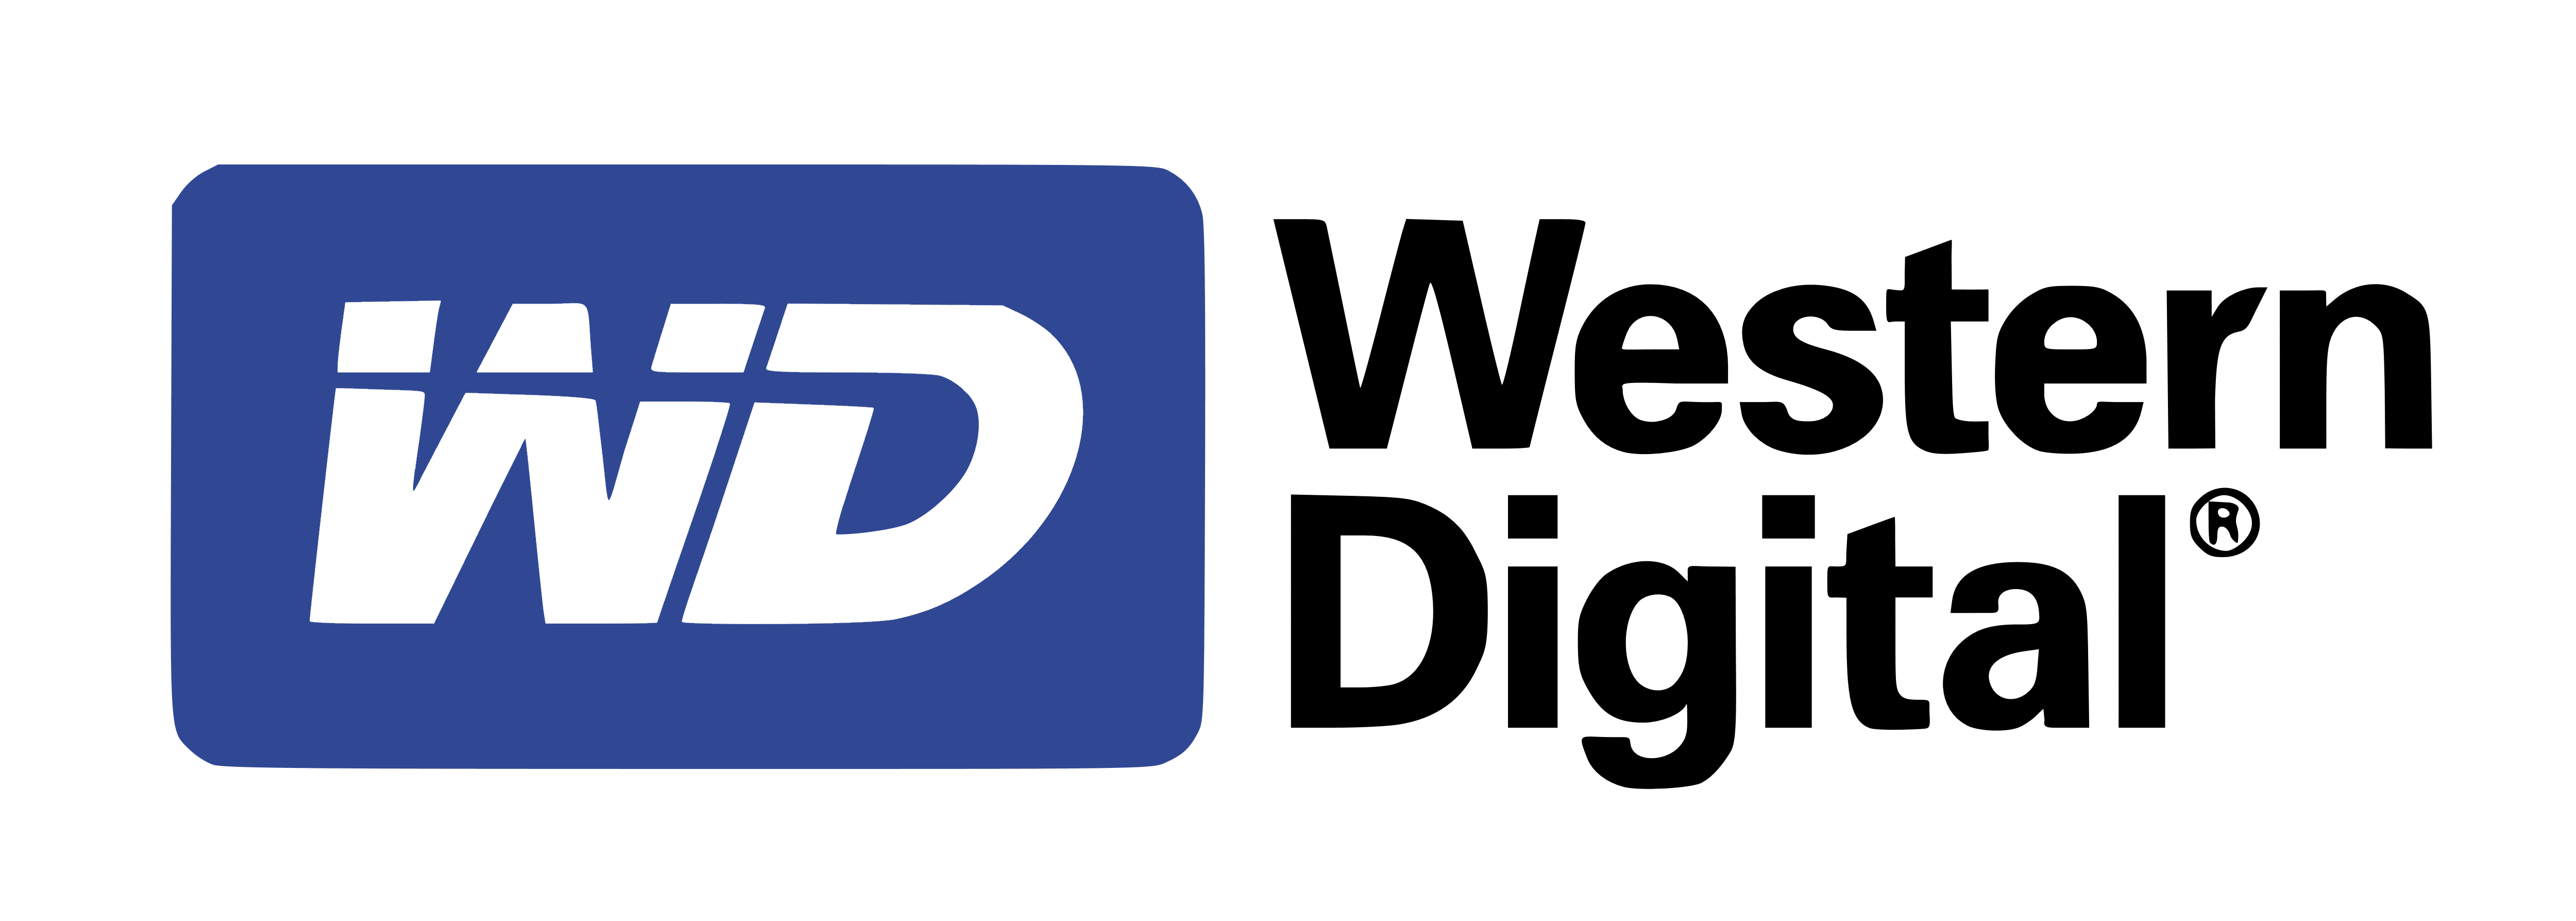 Western Digital-logo